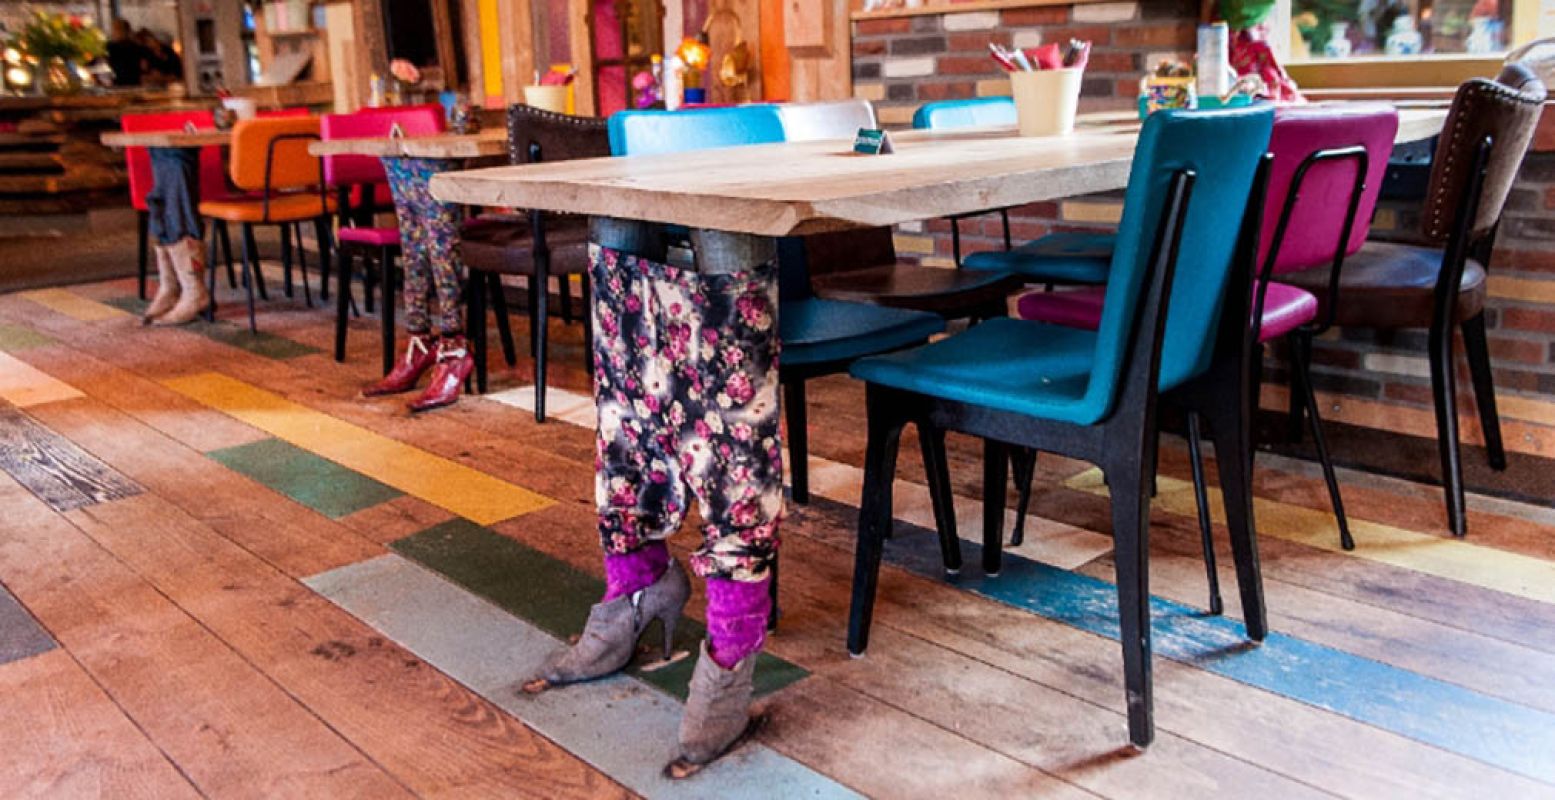 Tafels met magische benen! Houd je pannenkoek goed in de gaten... Foto: Pannenkoekhuis Hans & Grietje.